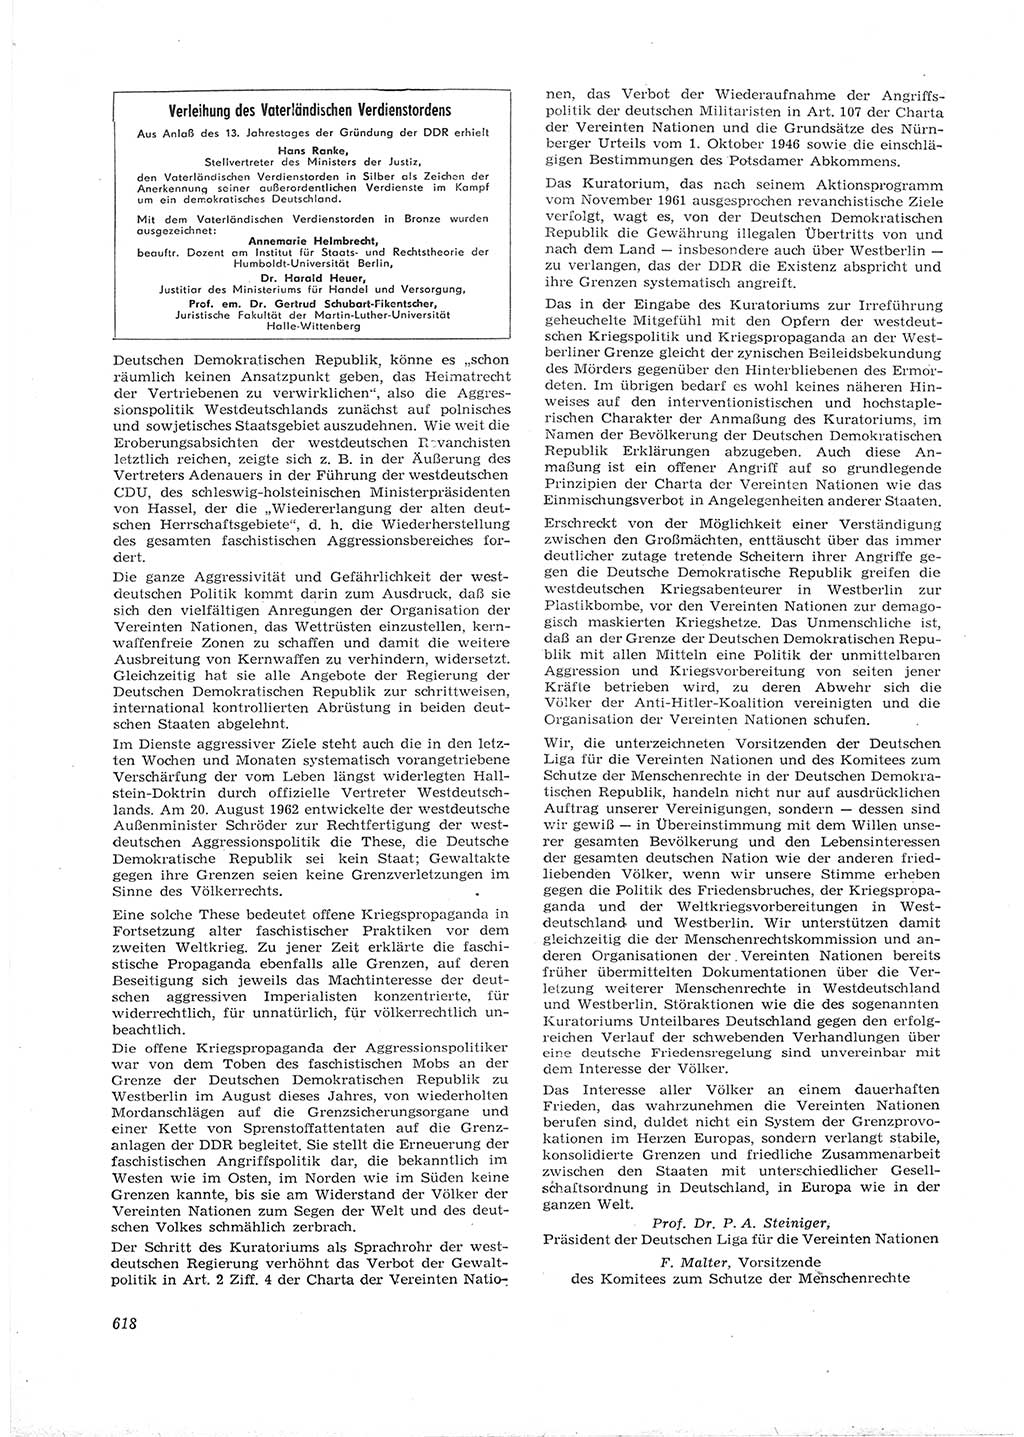 Neue Justiz (NJ), Zeitschrift für Recht und Rechtswissenschaft [Deutsche Demokratische Republik (DDR)], 16. Jahrgang 1962, Seite 618 (NJ DDR 1962, S. 618)